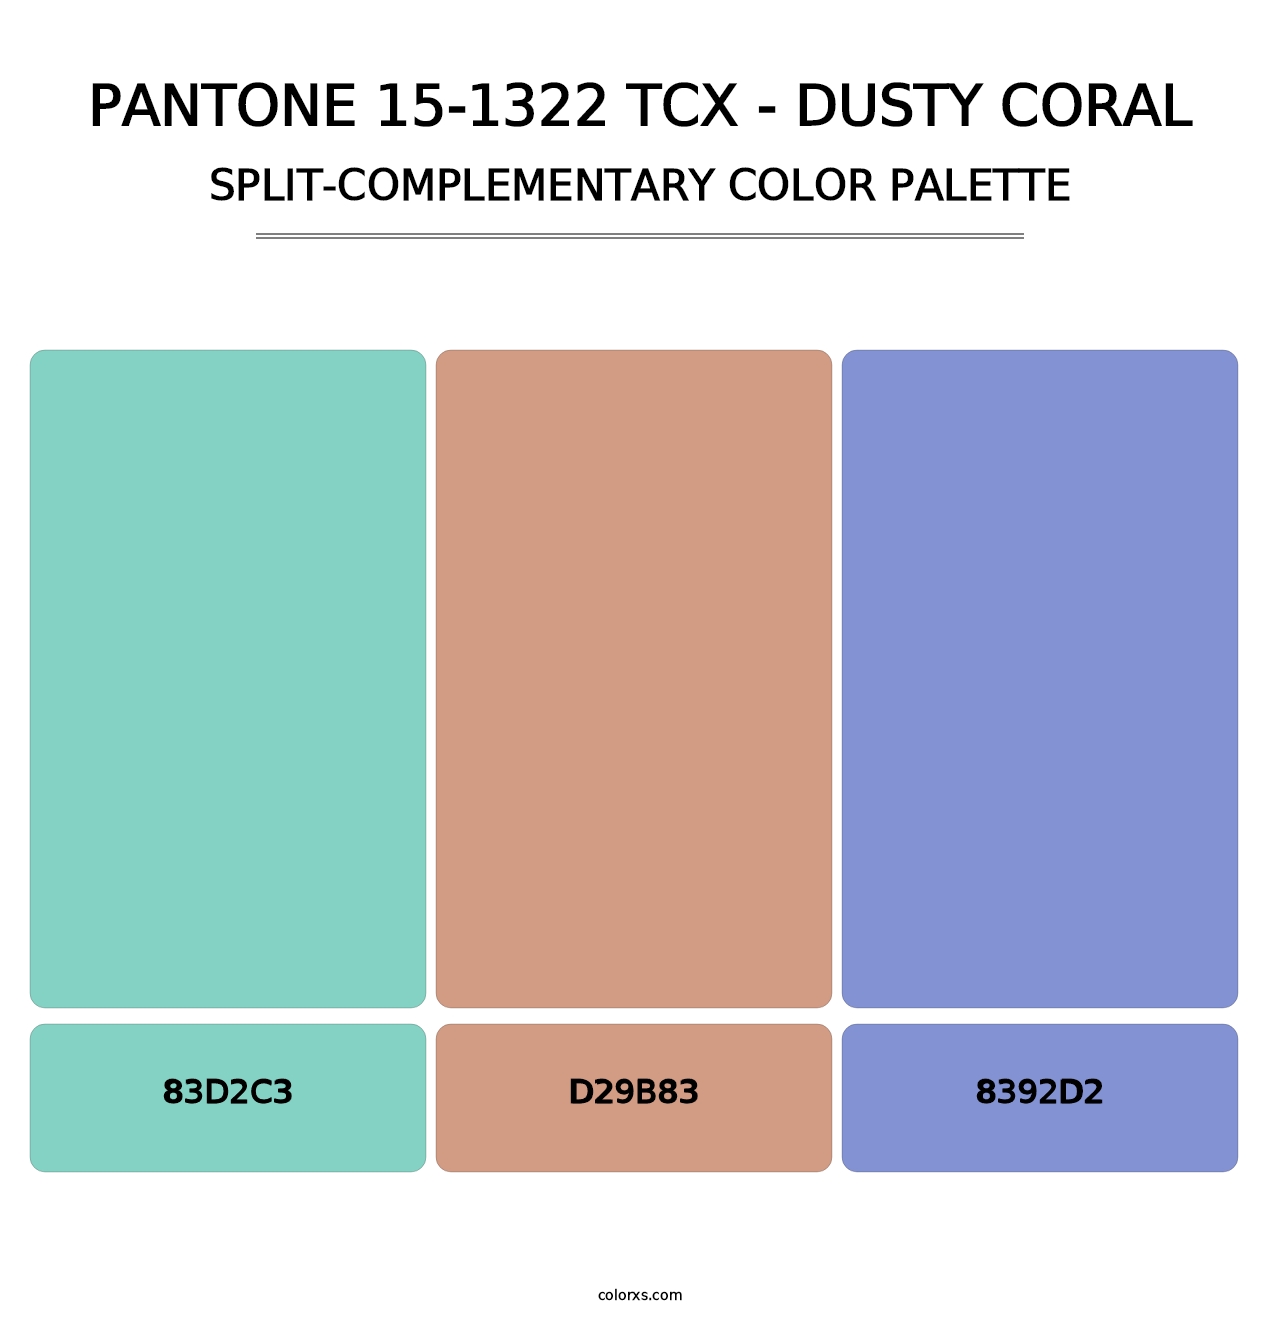 PANTONE 15-1322 TCX - Dusty Coral - Split-Complementary Color Palette